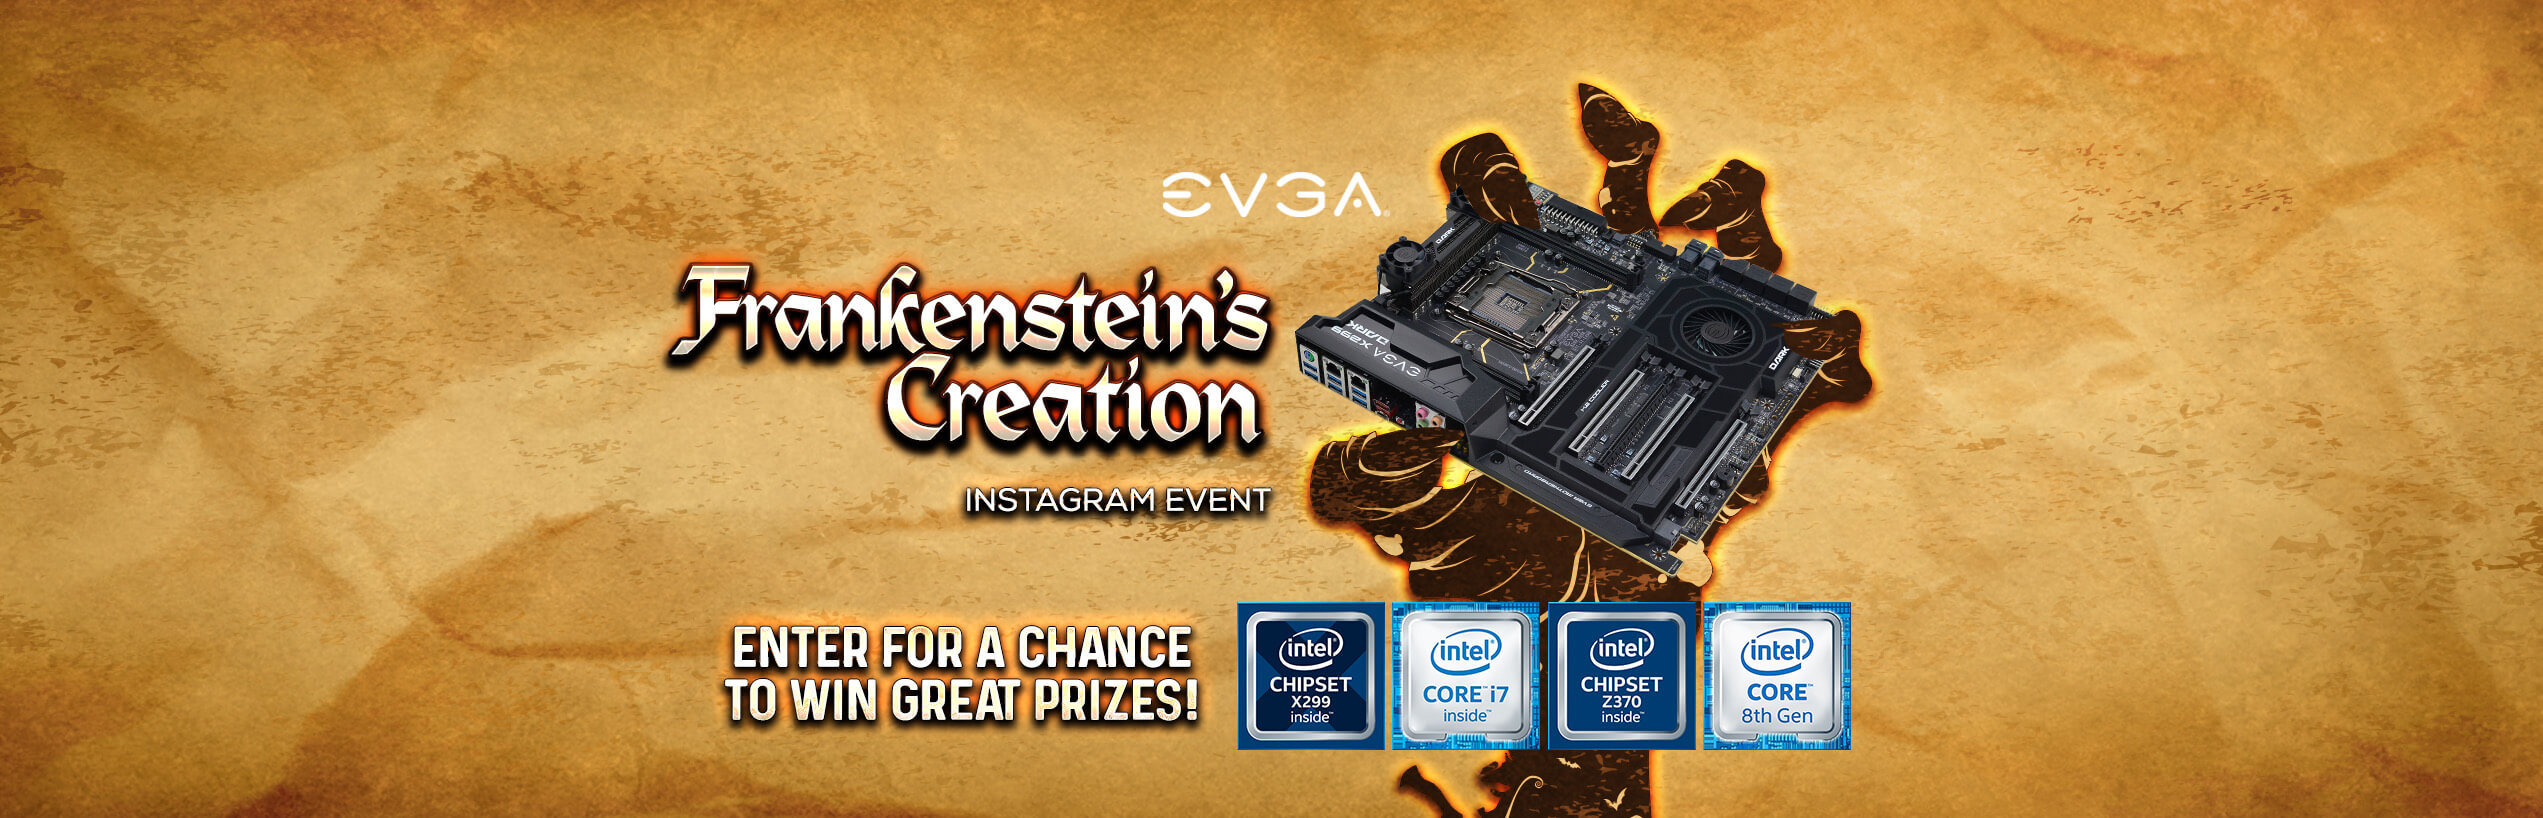 Frankenstein's Creation Instagram Event